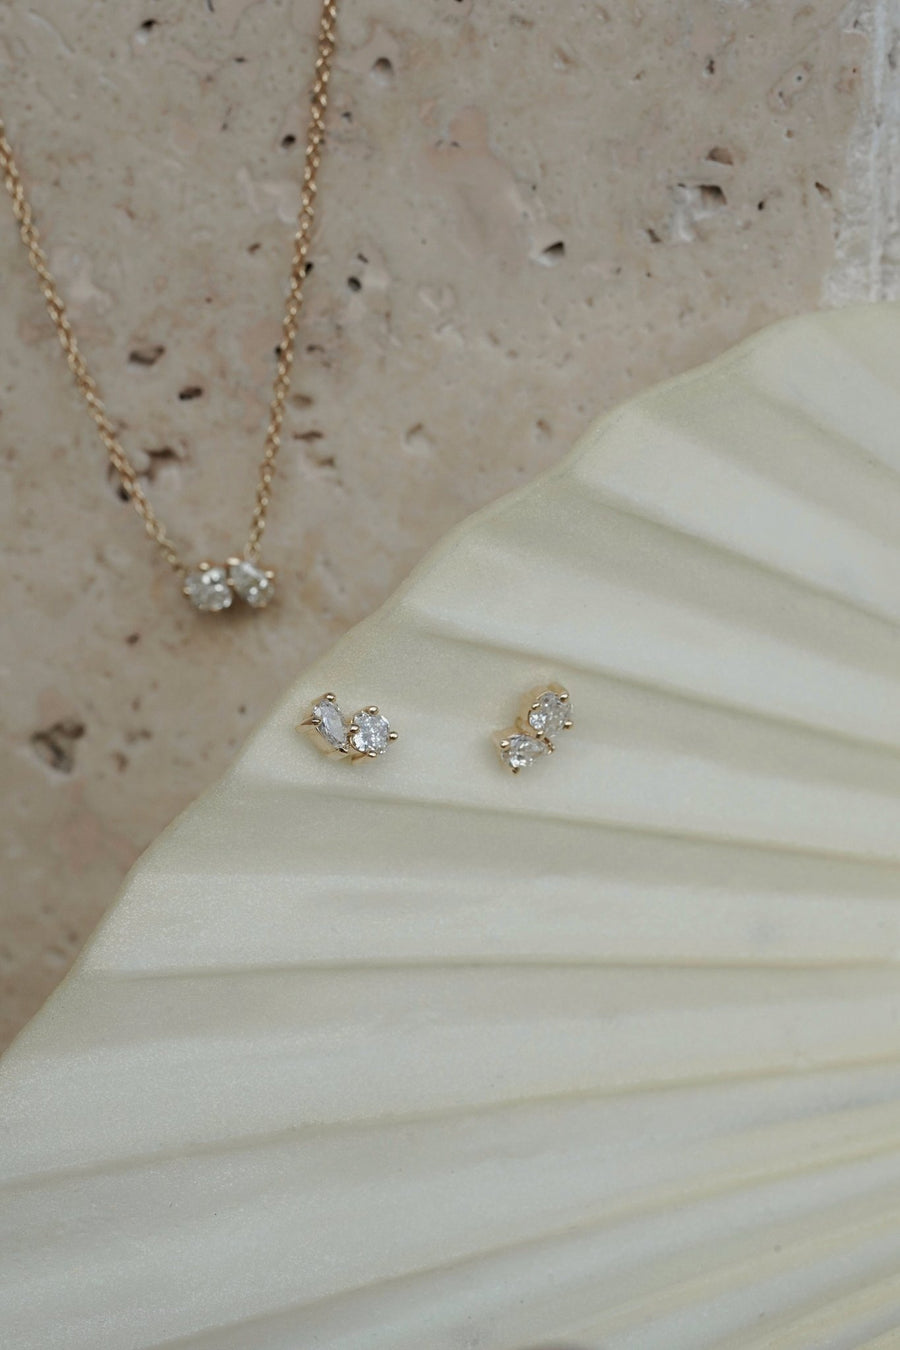 Angelica Diamond Earrings - Eliise Maar Jewellery